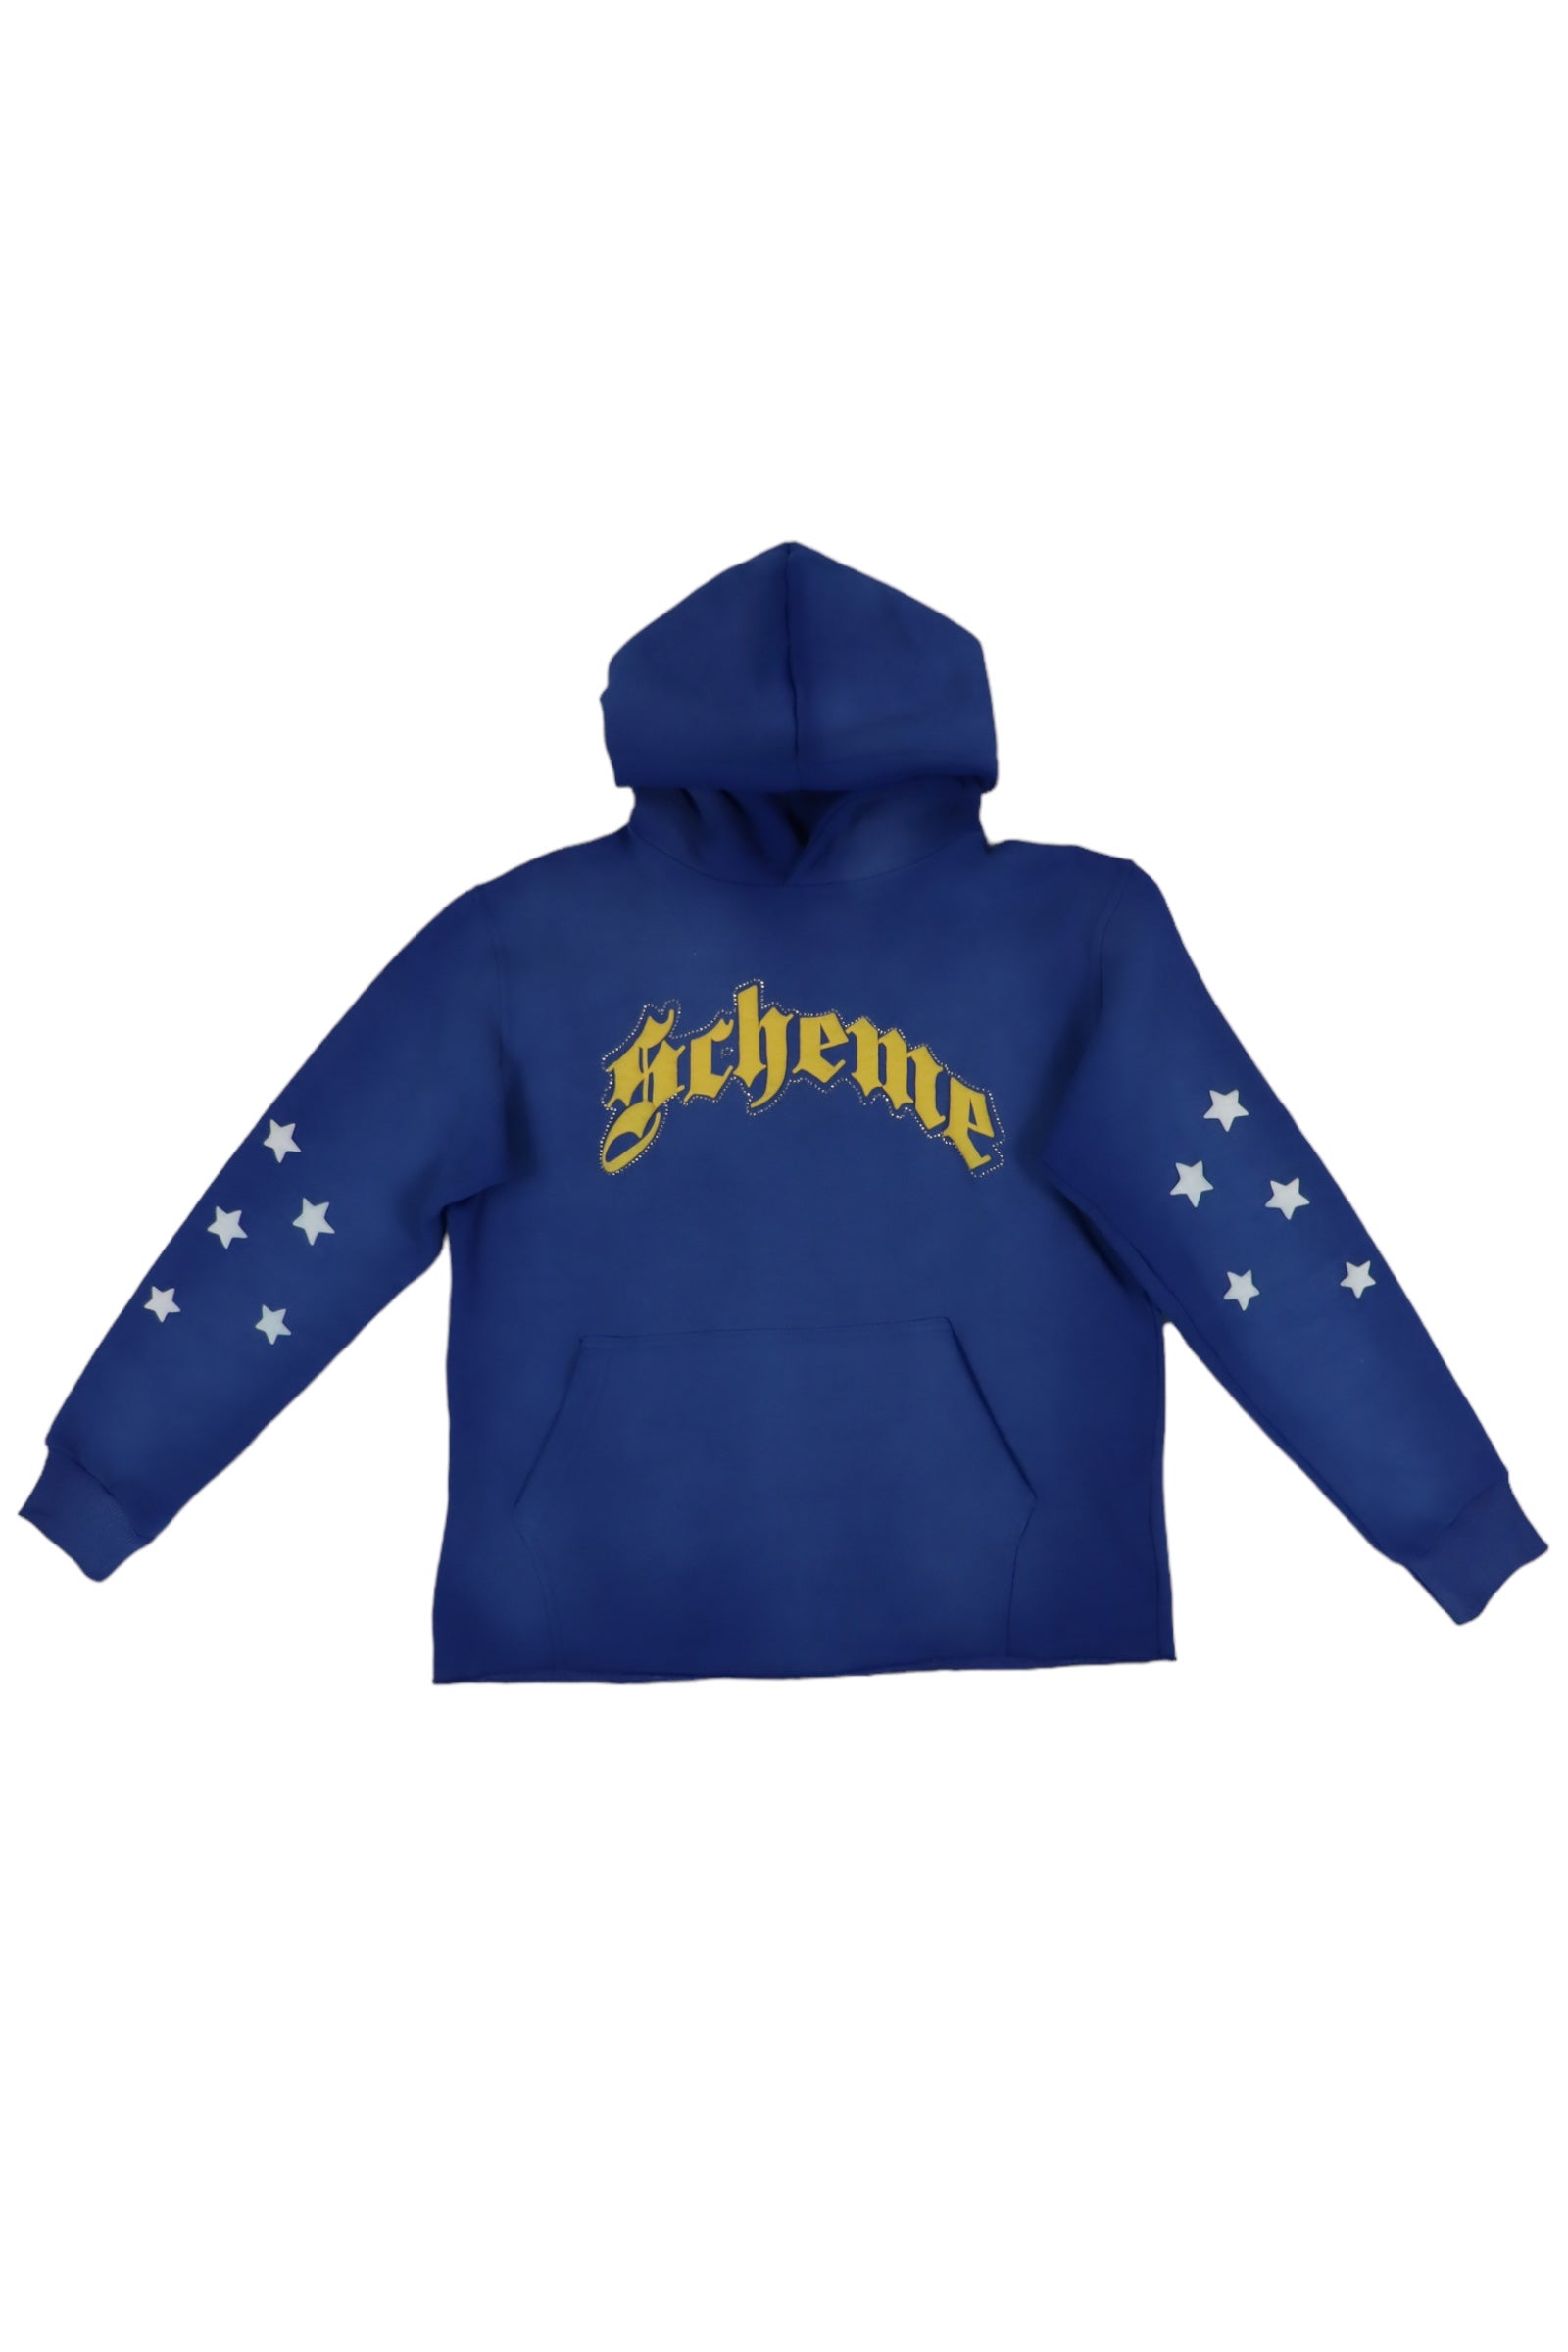 "Scheme" Rhinestone Star Puff - Washed Blue Hoodie - Scheme Wear